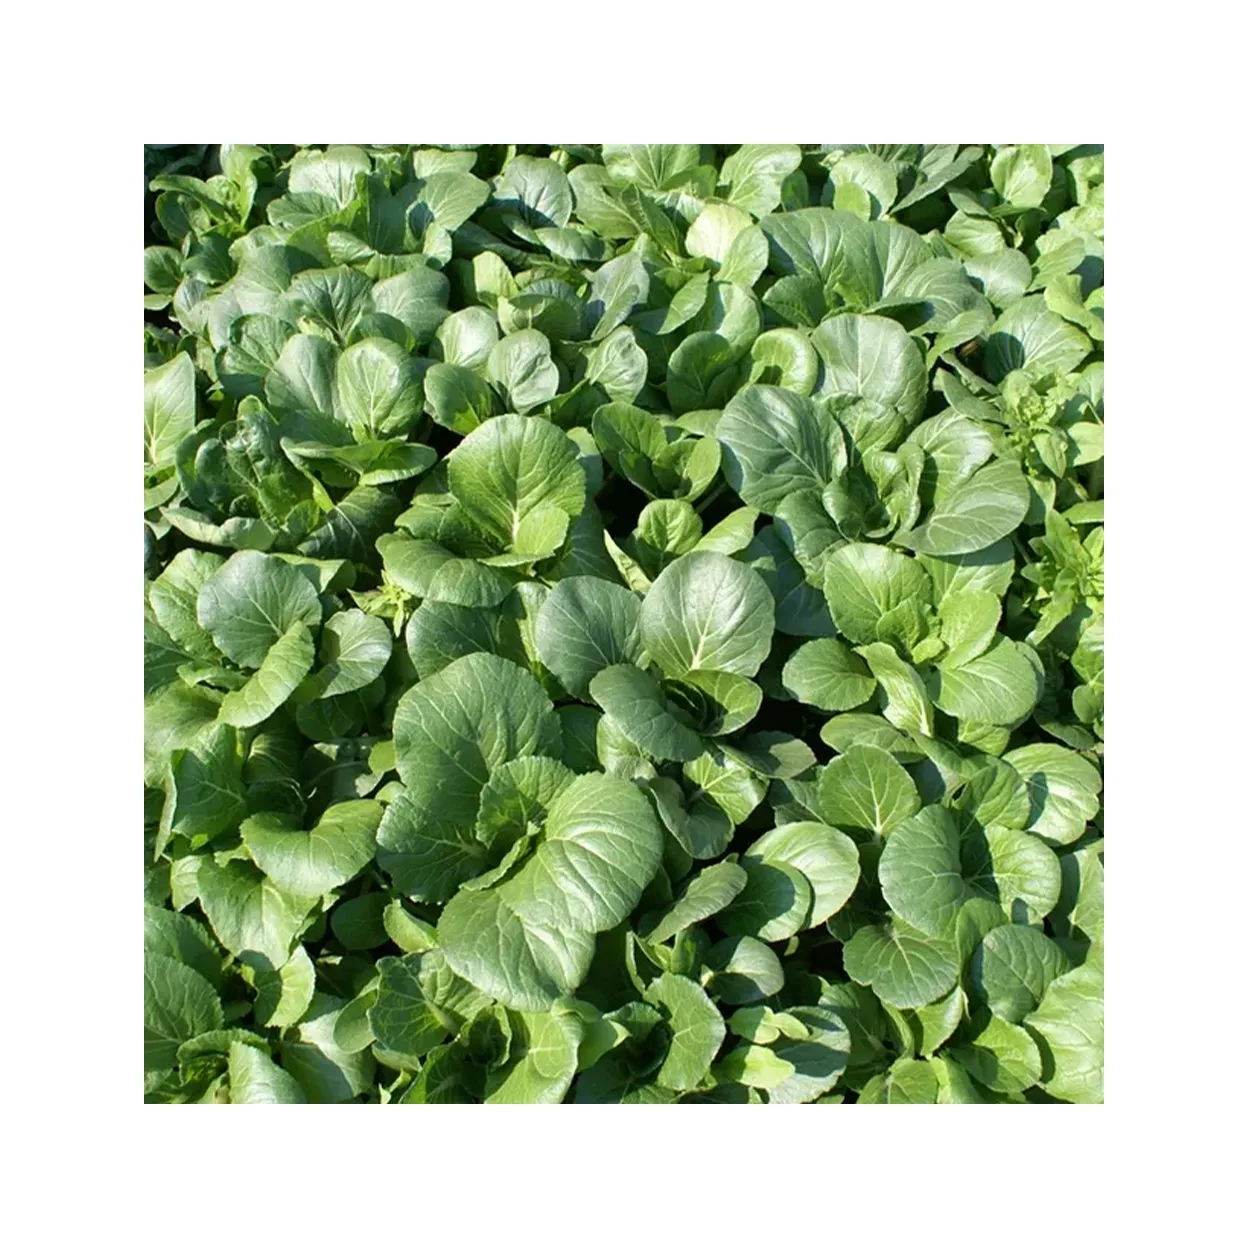 Qualität Großhandel Spinat Bio Gemüse Spinat Extrakt Pulver mit schnellem Versand